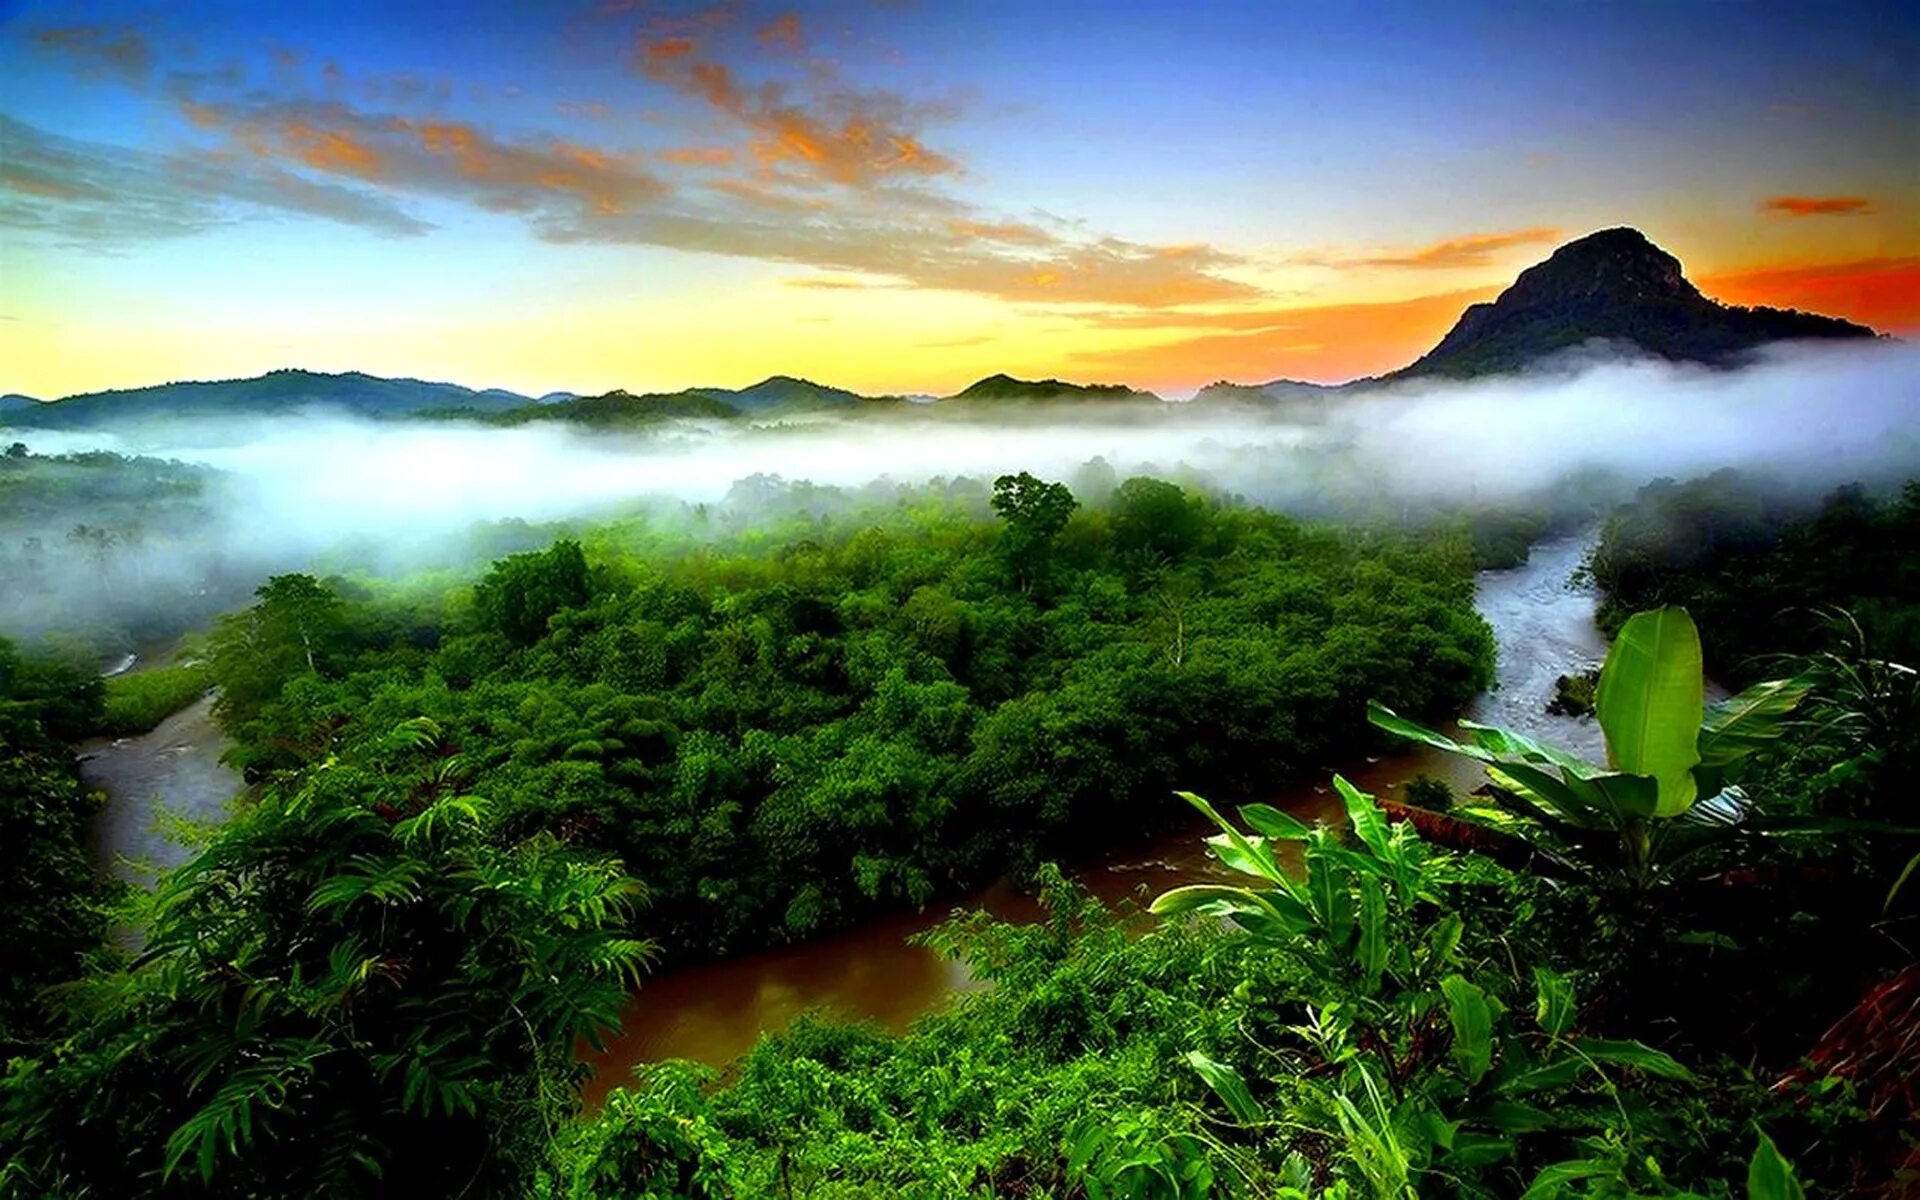 Amazon borneo congo. Джунгли Борнео Индонезия. Тропические дождевые леса Индии. Национальный парк Монтеверде (Коста-Рика). Индонезия остров Калимантан.